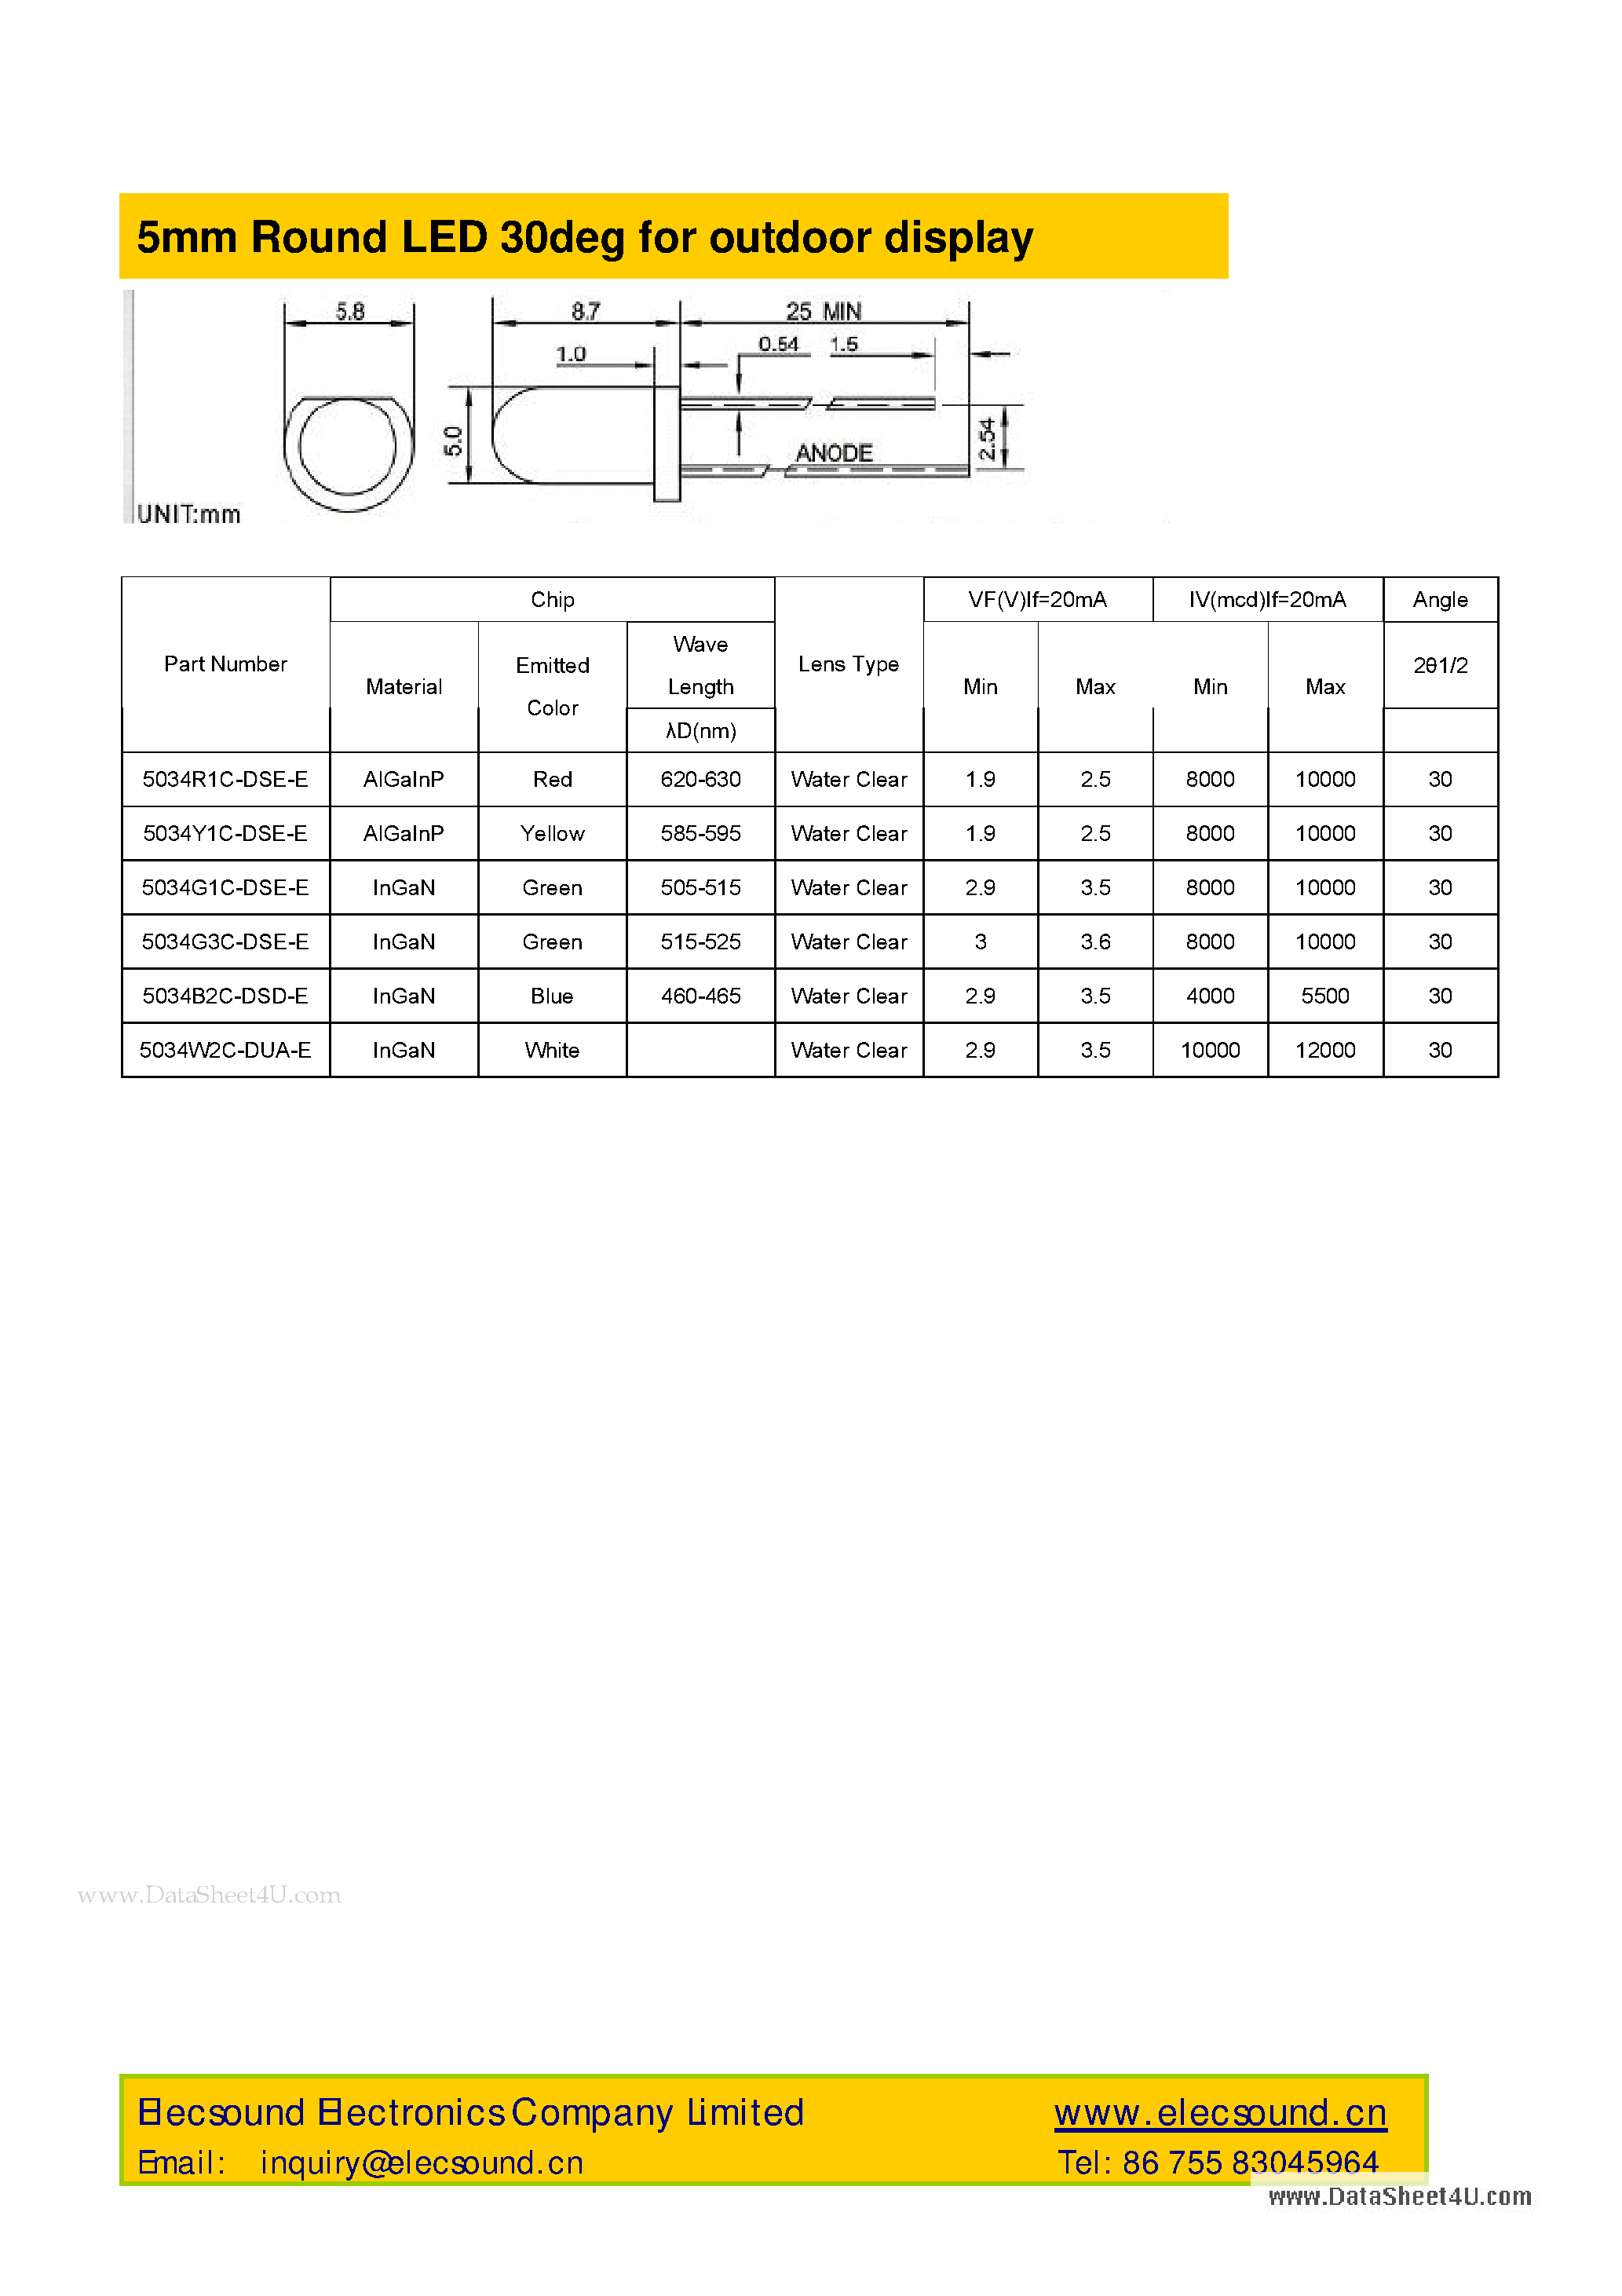 Datasheet 5034B2C-DSD-E - 5mm Round LED 30deg page 1